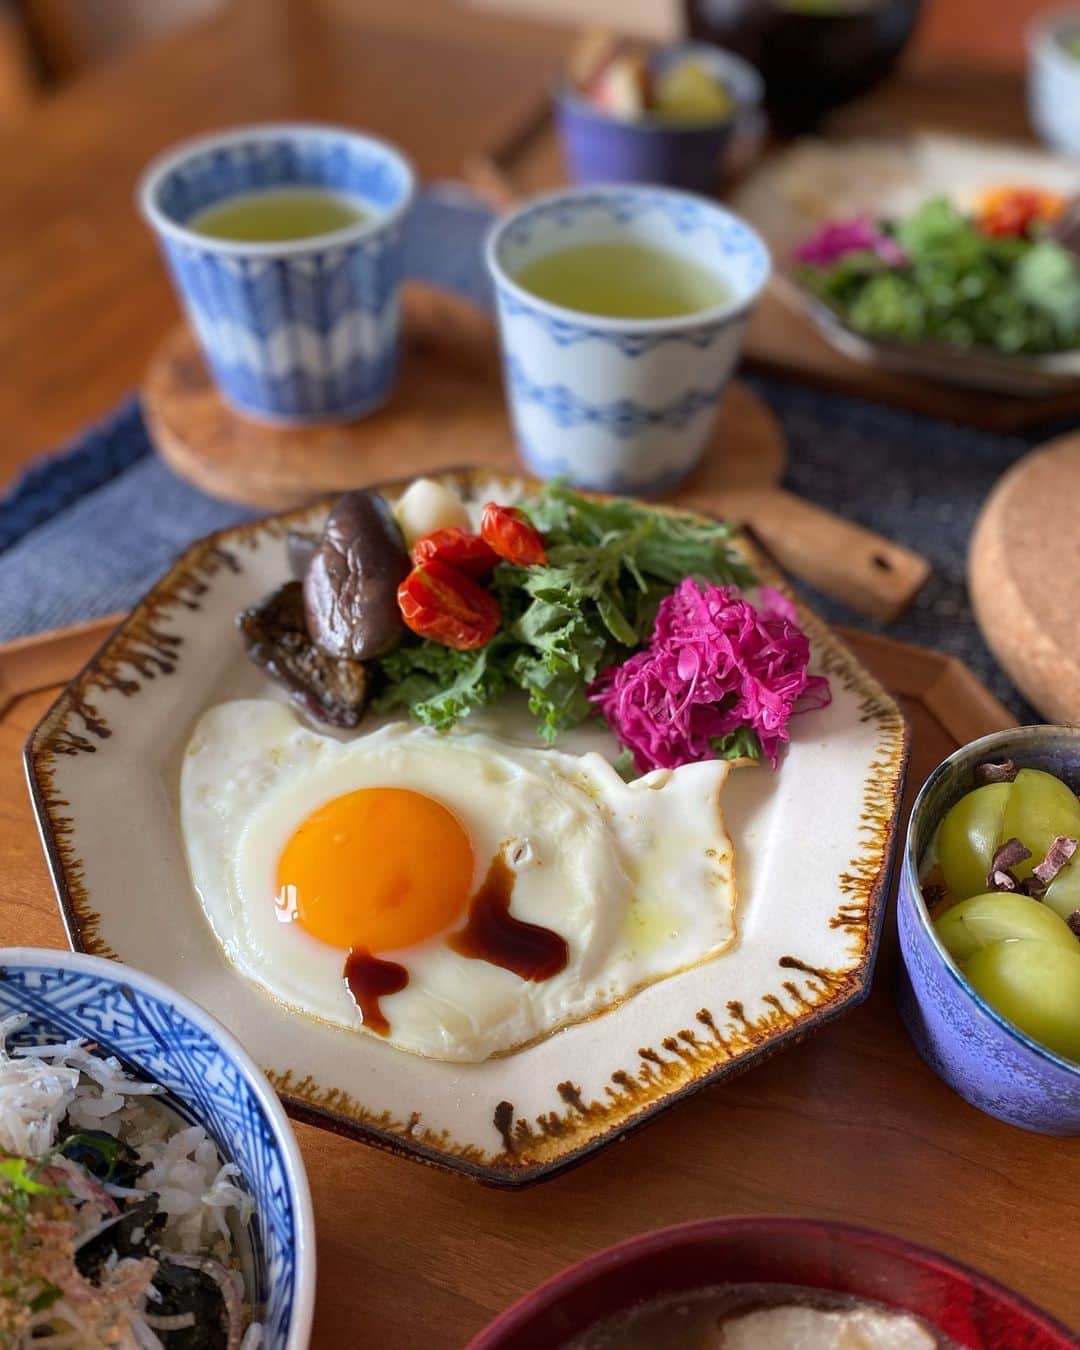 kokochiyoiのインスタグラム：「2023/10/08 日曜日の朝ごはん🍚  ・アボカドしらす丼には 　みょうがとシソをたっぷり ・ぷりぷりしいたけ、小松菜、 　豚モモ、こんにゃく、お豆腐の 　具沢山ごま味噌汁  ・目玉焼き🍳 ・茄子のバルサミコマリネ🍆 ・#カチョカバロ(ミニサイズ🧀) ・プチドライトマト🍅 ・春菊とケールのサラダ ・紫キャベツのマリネ  ・シャインマスカットといちじくの 　#豆乳グルト ・緑茶🍵  最近、 プチドライトマト作りに ハマってます🍅  実は私、生のトマトが少し苦手で😞  でも、トマトに含まれる リコピンの抗酸化作用✨はもちろん、 #13オキソODA(覚えられない…🥺)は 脂肪燃焼効果があるらしく、 やっぱり生は苦手でも トマトは食べたい…🍅  ということで、 夏は無塩のトマトジュースを 飲みまくっていたのですが  最近涼しくなって ジュースがあまり飲めなくなって、 ドライトマトを作り始めました💪  ドライにしたらおいしい上に 保存も効いて最高✨ てことで作りまくってます🍅  私は手っ取り早く プチトマトを半分に切って オープンシートを敷いた天板の上に 切り口を上に並べて、 切り口の水気を上からペーパーで 2-3回取り、お塩を振ったら 130℃オーブンに60分。  オーブンに入れたら放っておくだけで おいしいドライトマトの出来上がり🤗  焼くときに生のタイム🌿や ニンニクスライス🧄を一緒に焼いて、 それらをそのまま オリーブオイルに漬けても👍 前菜風にしたり、パスタに使えます😋 #kokochiyoiレシピ   よかったら作ってみてくださいね🍅  #ドライトマト作り  #ドライトマトのオイル漬け  #リコピン」